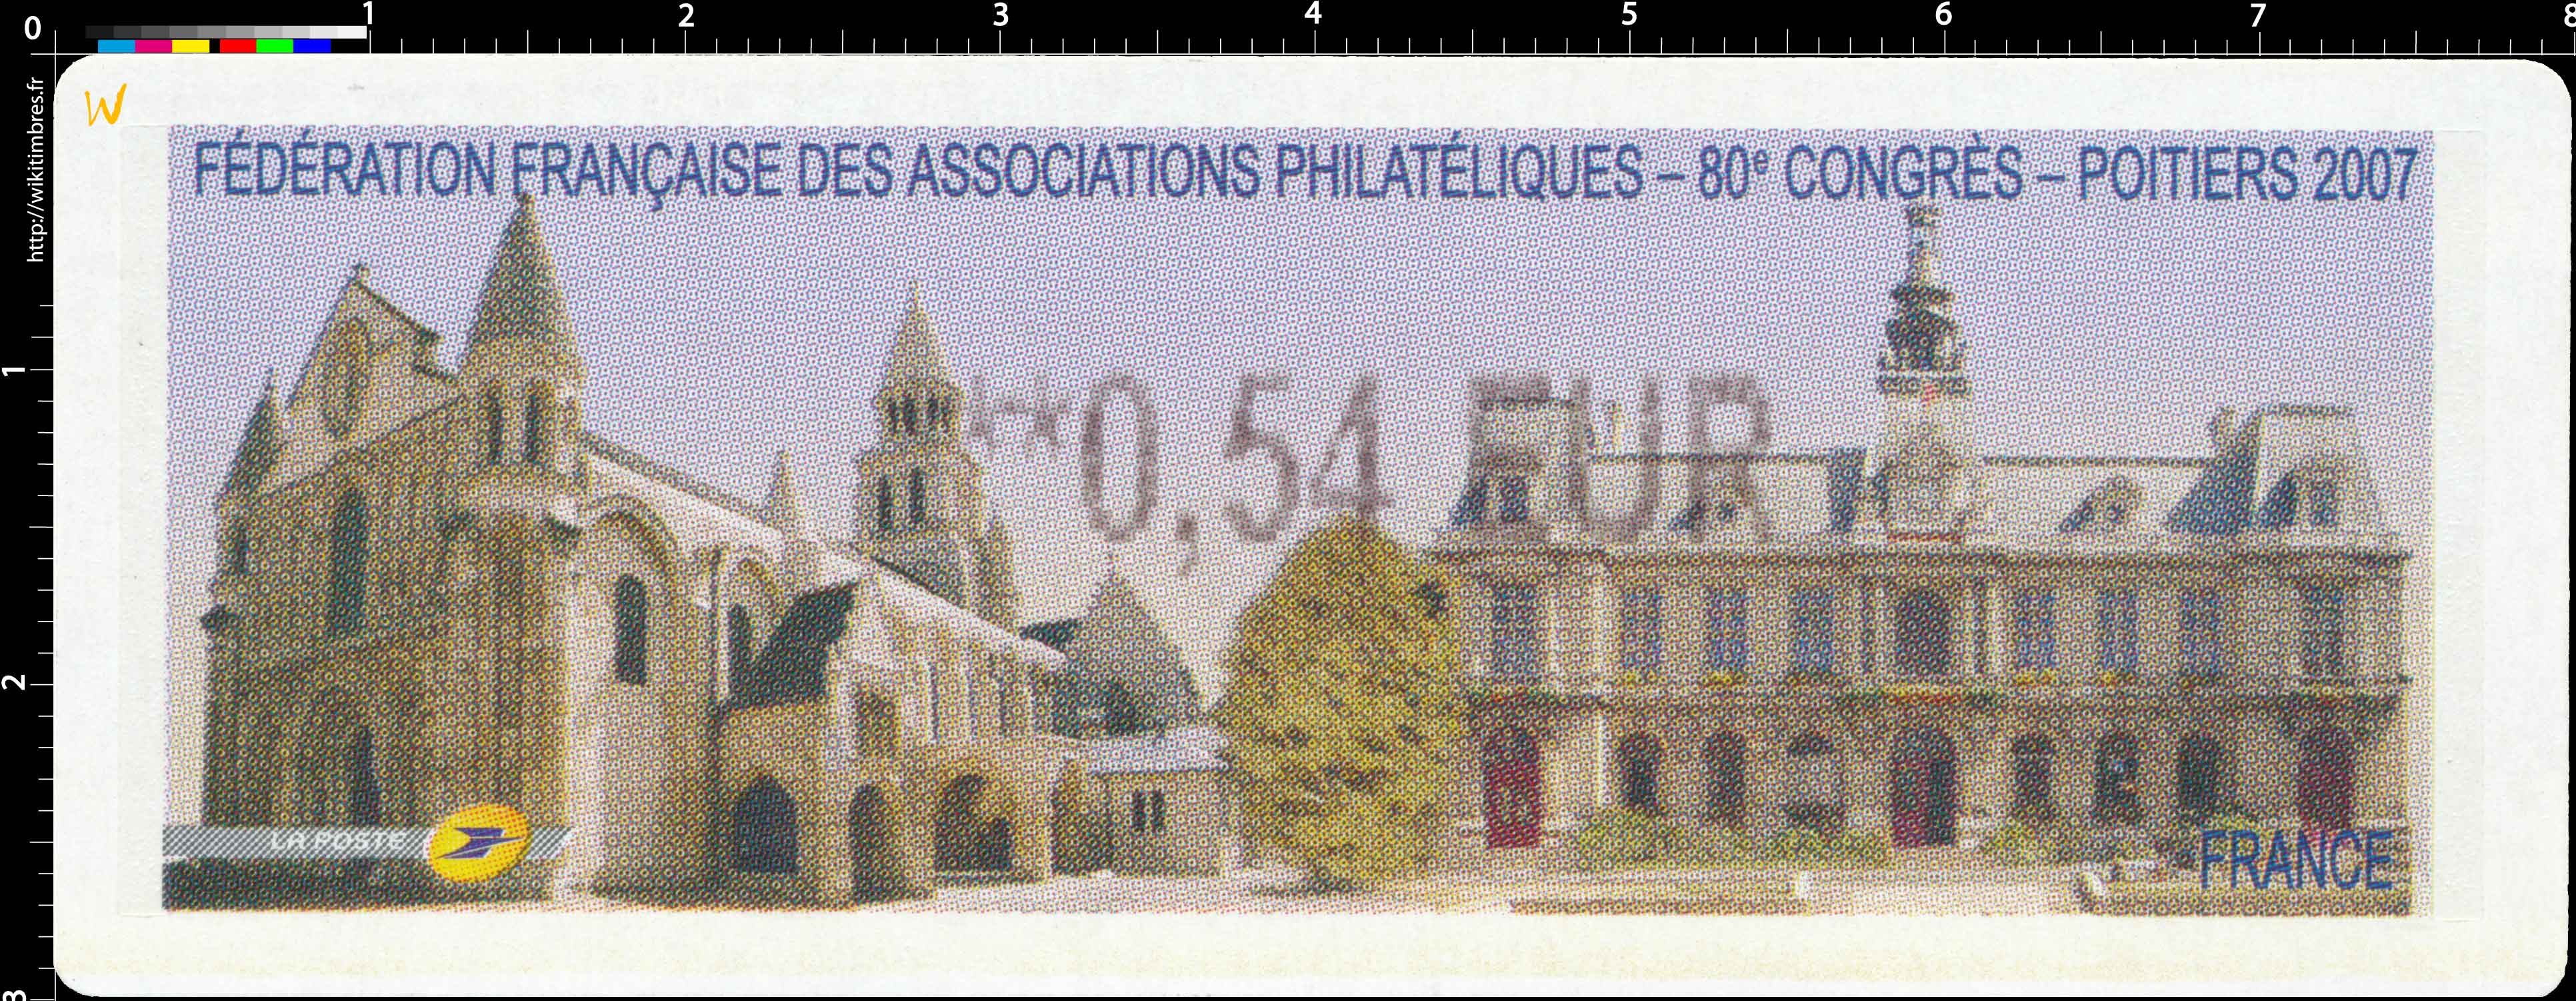 Fédération Française des associations philatélique 80e congrès Poitiers 2007